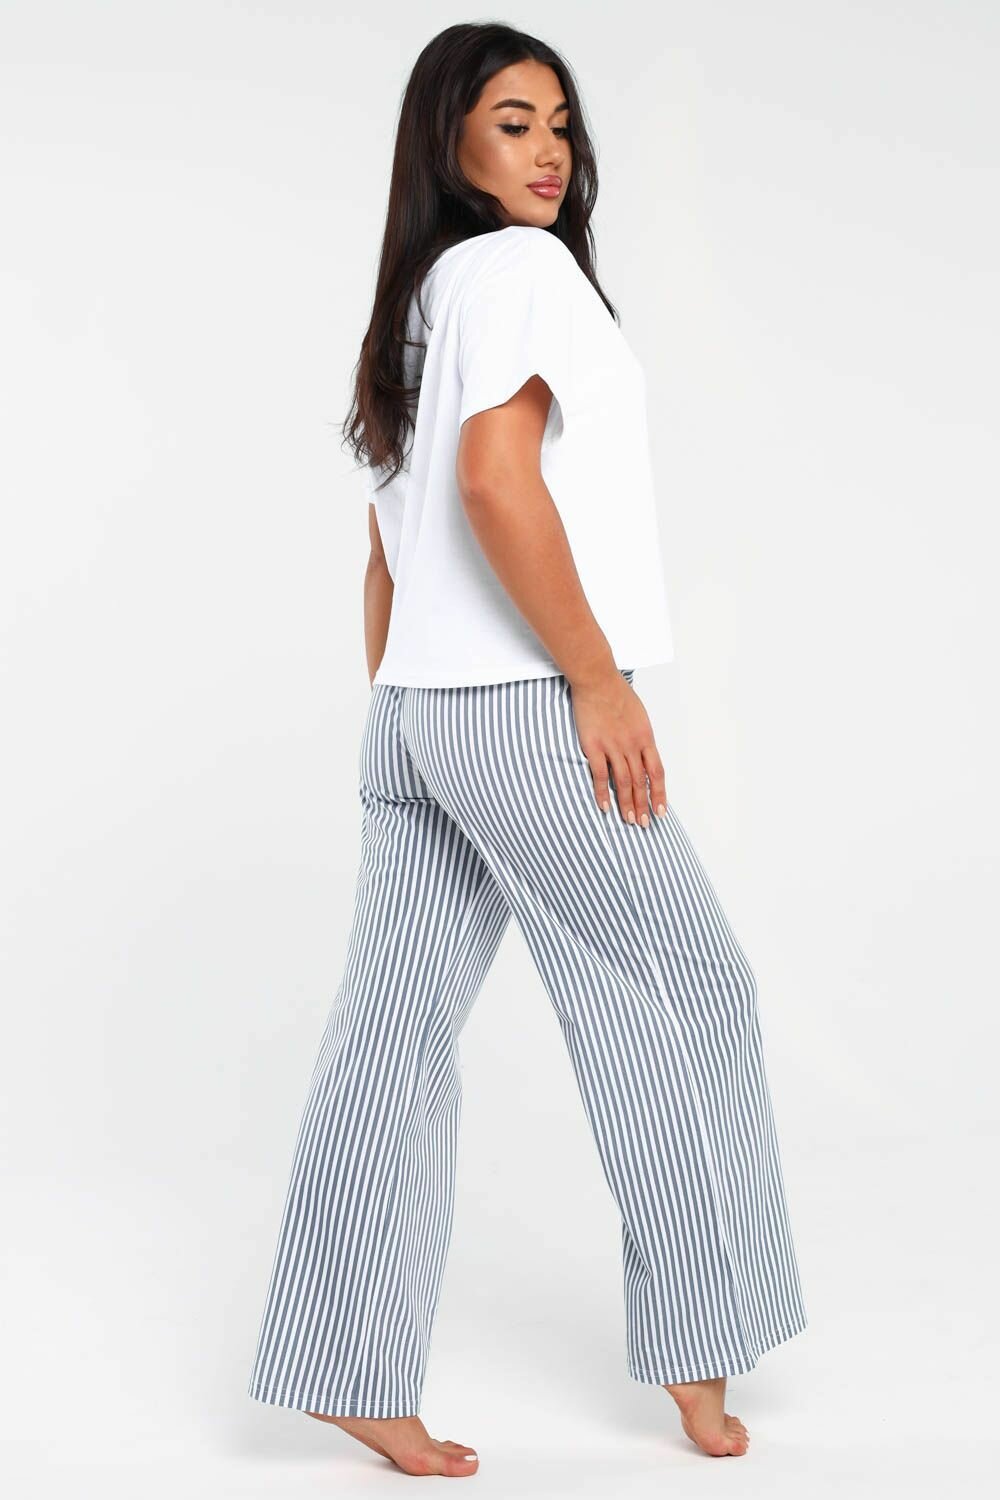 Пижама DIANIDA М-799 размеры 44-54 (44, светло-серый) - фотография № 3